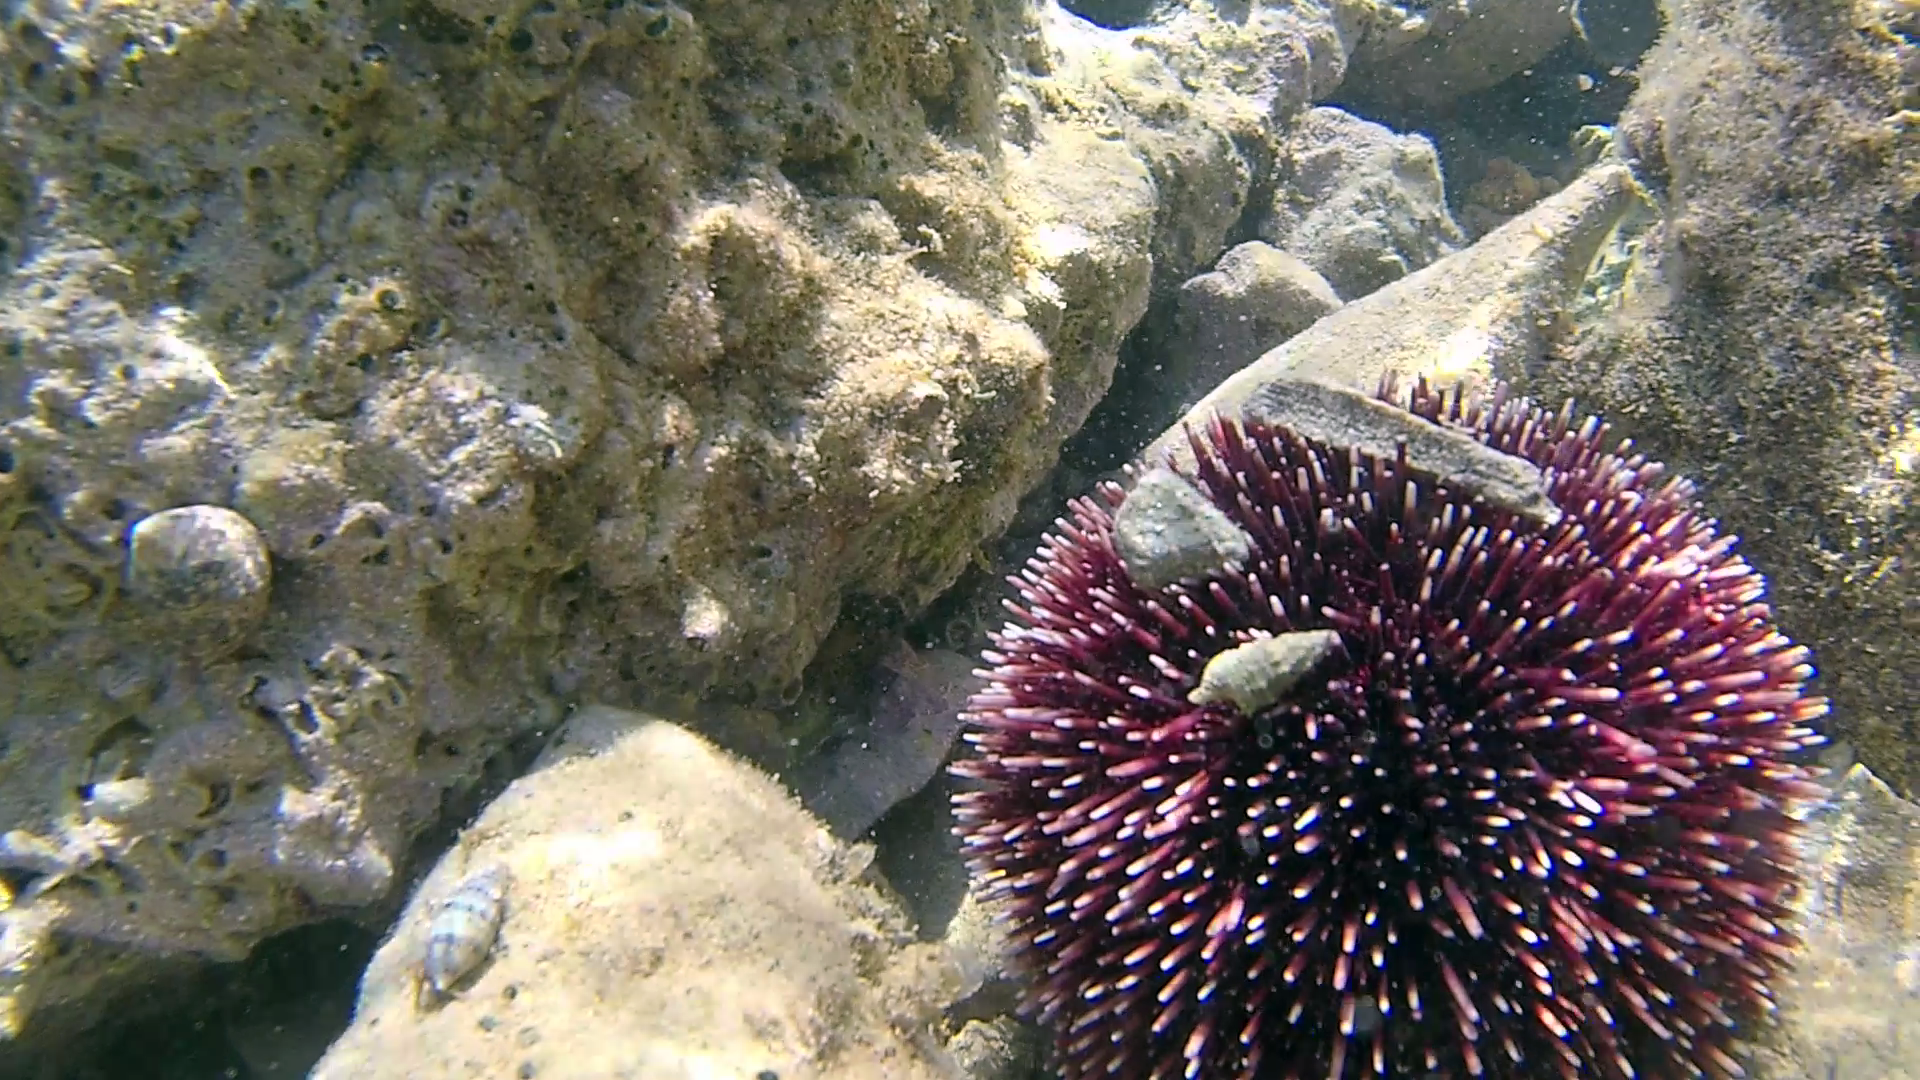 Riccio di Prateria - Sphaerechinus granularis - Purple sea Urchin - intotheblue.it